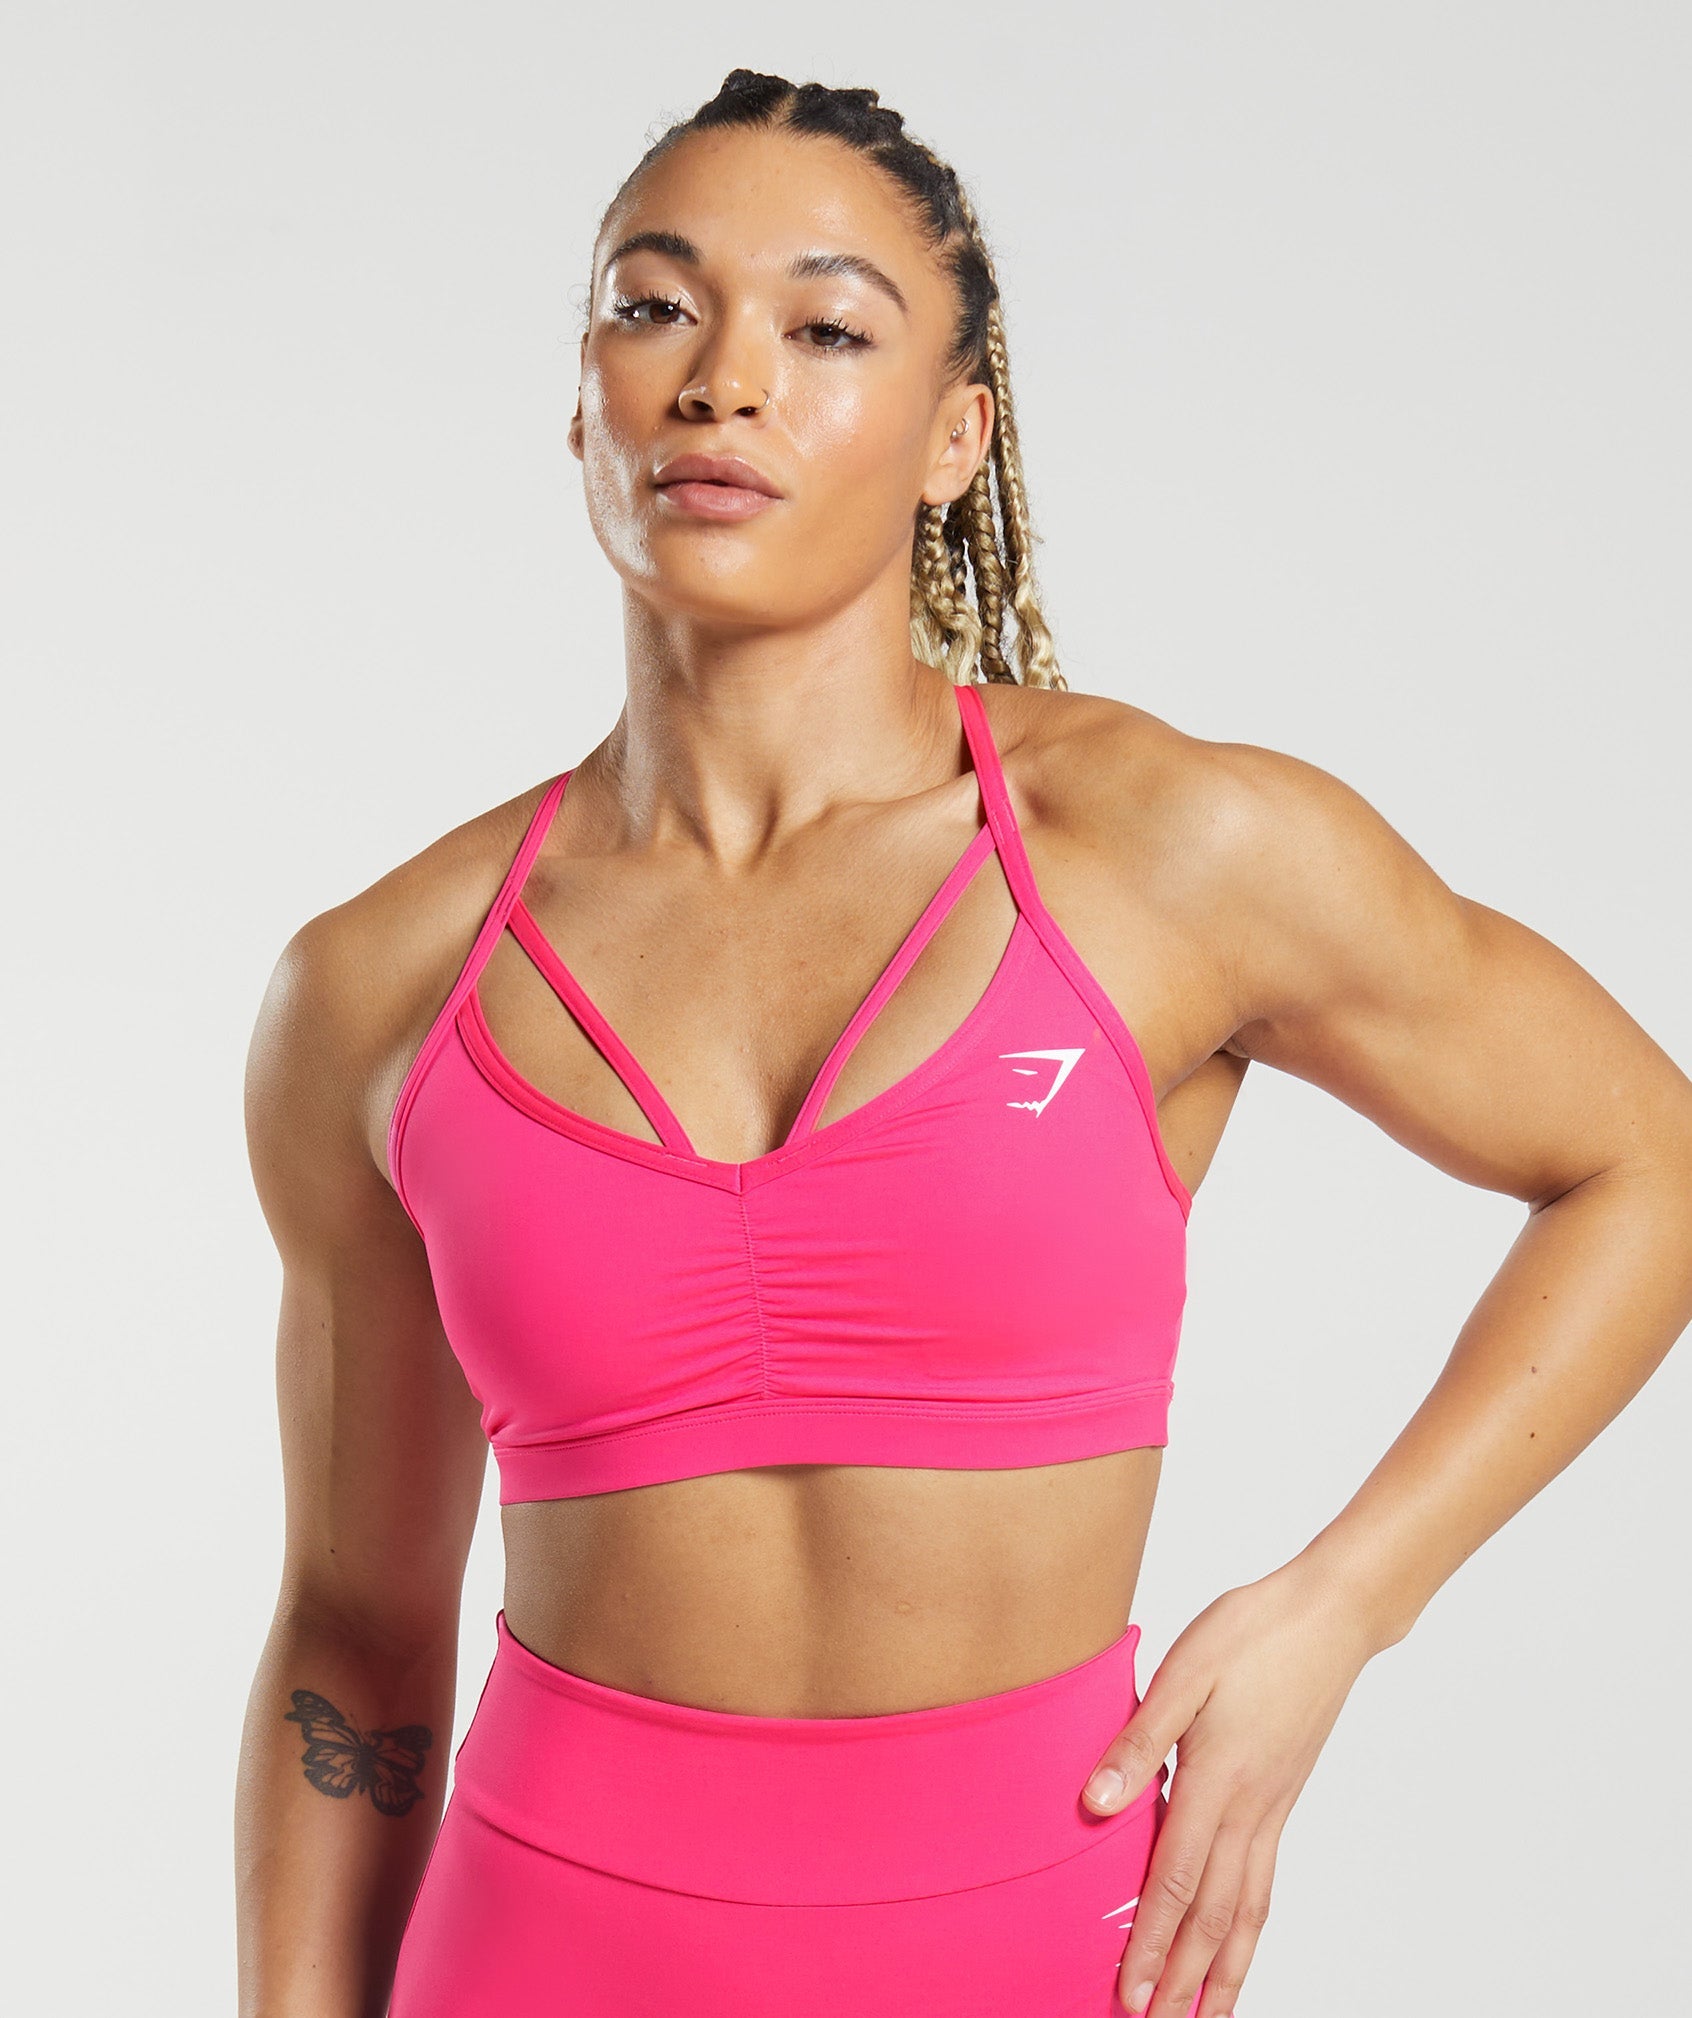 Women's Workout Sets 2 Piece Color Gradient Clothing Suit Pink